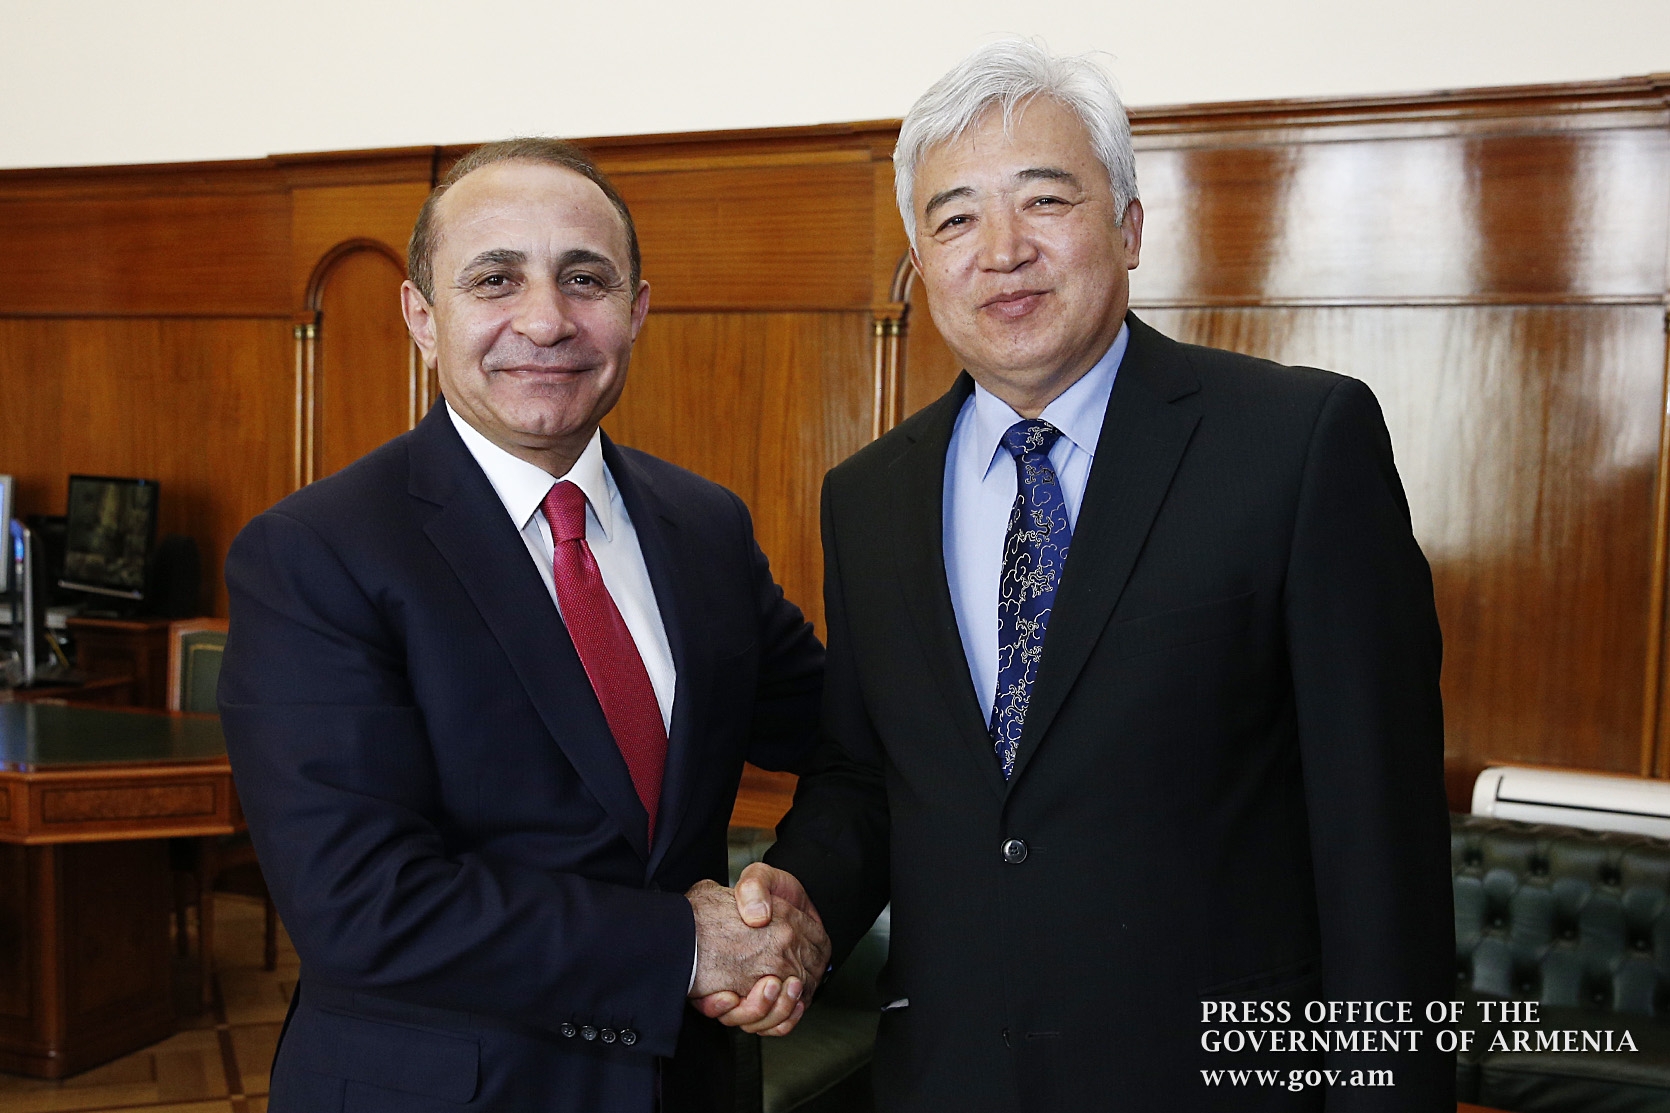 Посол Китая передал премьер-министру Армении поздравительное послание премьера 
госсовета Китая 